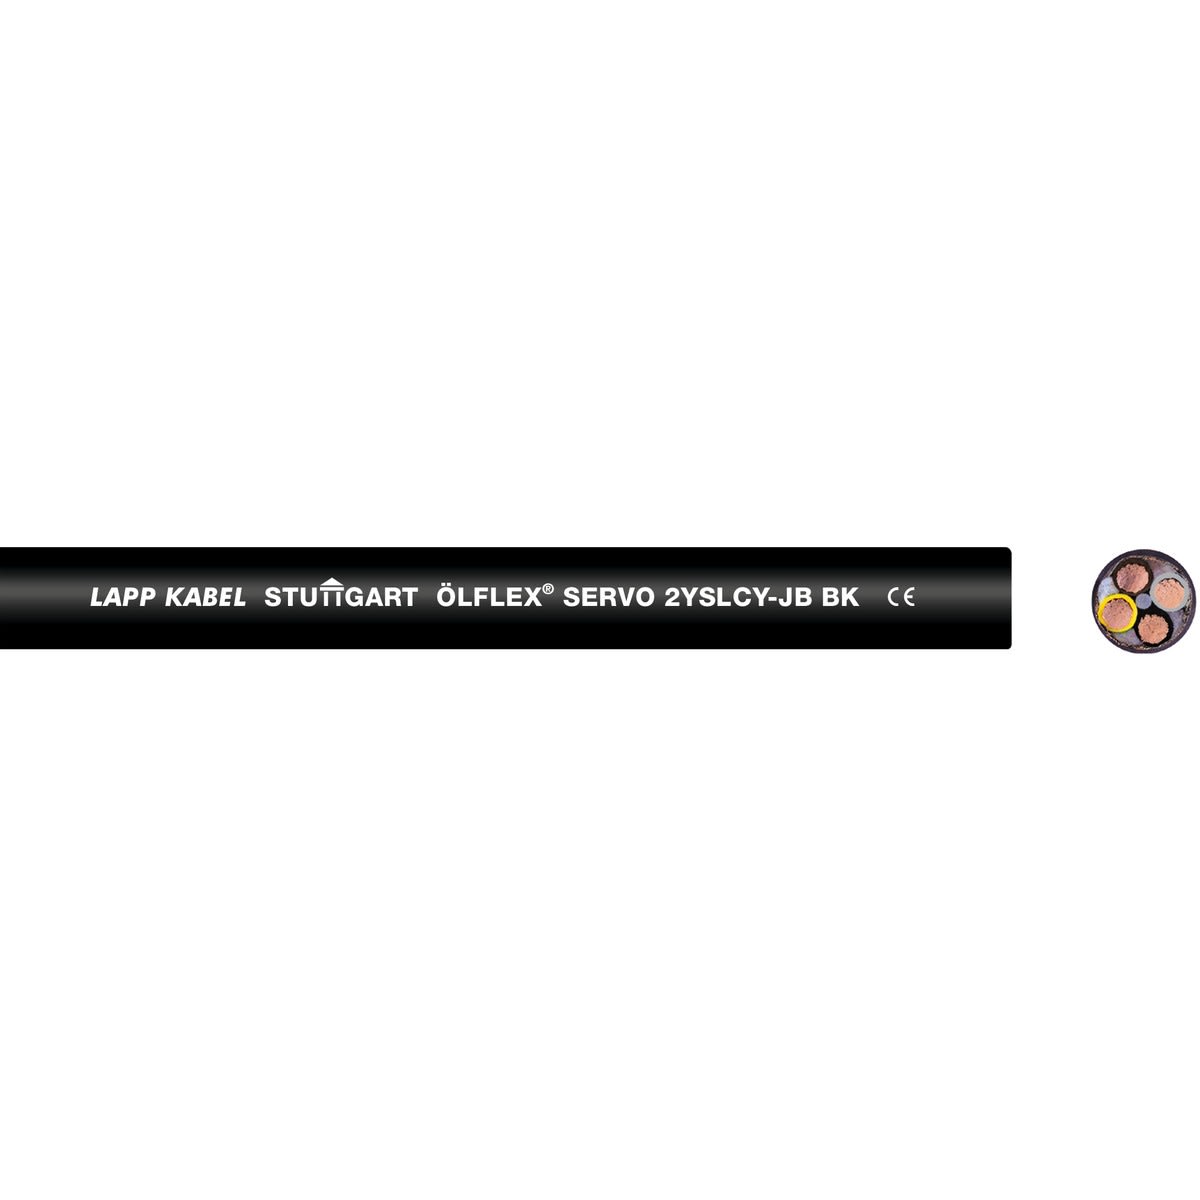 Lapp - ÖLFLEX SERVO 2YSLCY-JB BK 4G1,5